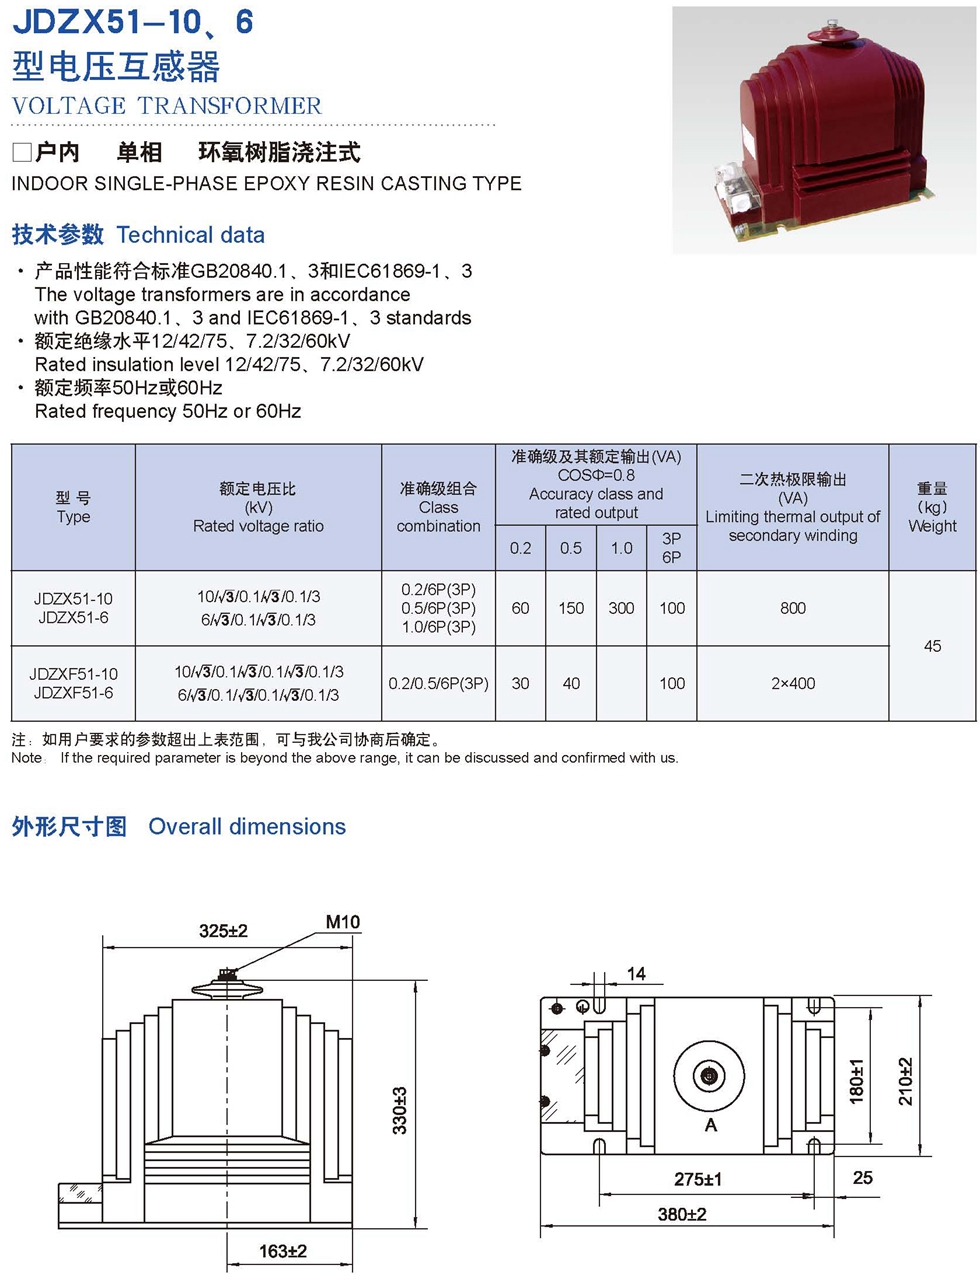 JDZX51-10、6 Transformer Products